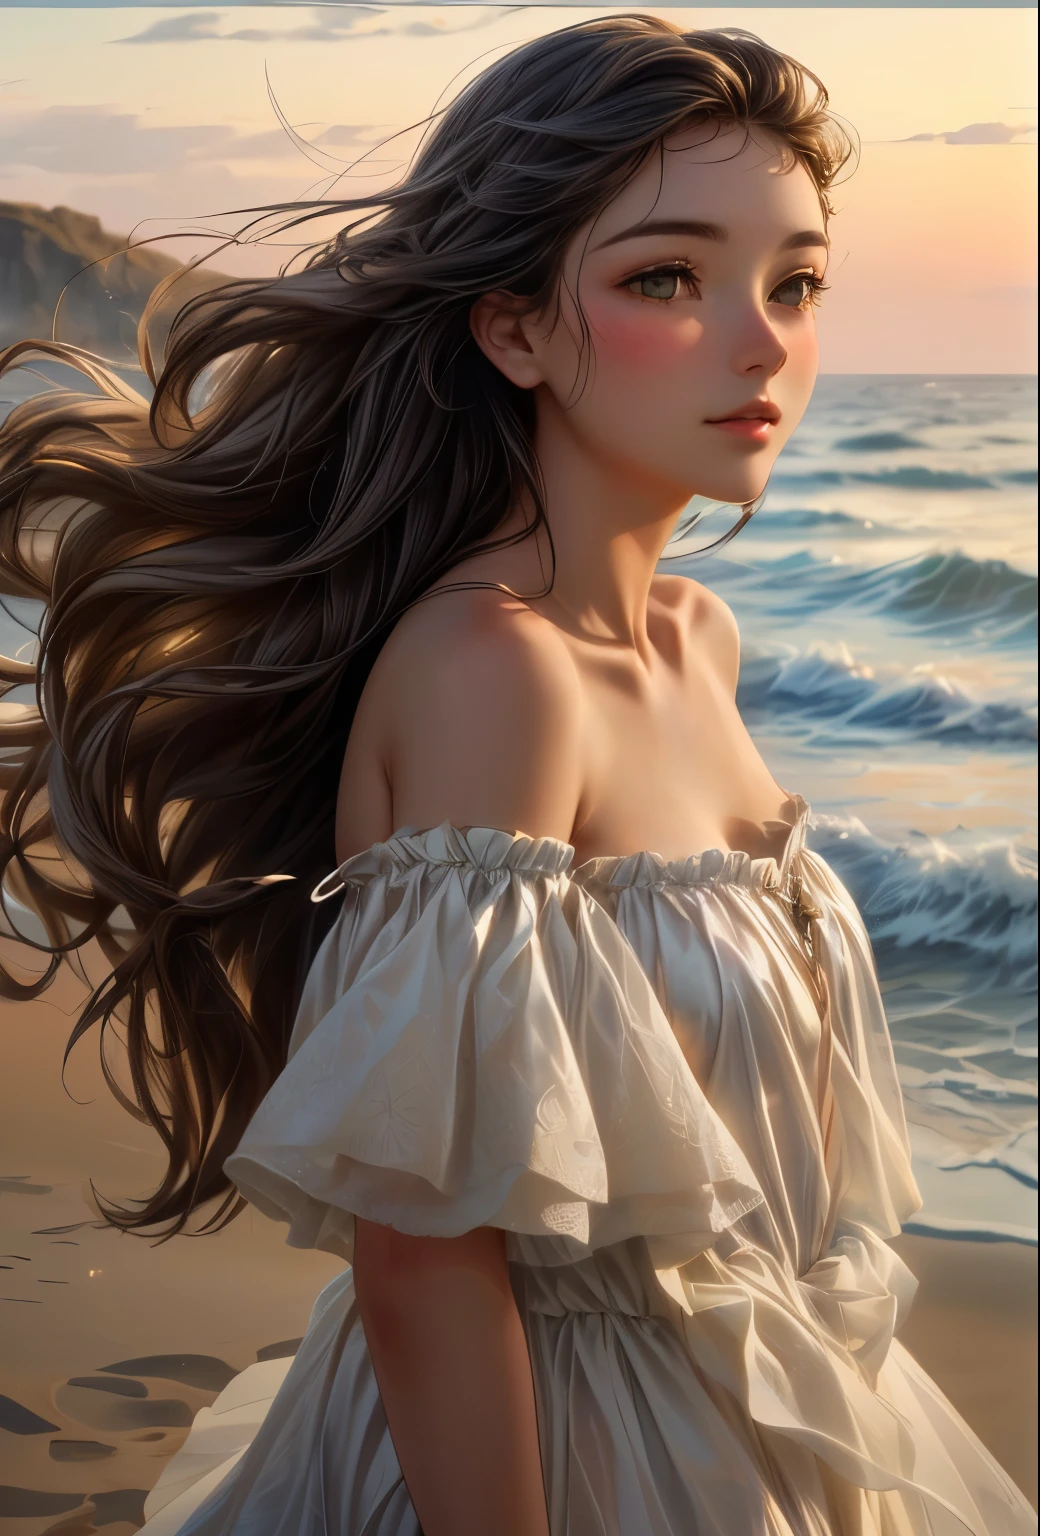 
La fille géorgienne à la mer, sa robe fluide flottait au vent, créer une vue éthérée. Cette magnifique peinture à l&#39;huile capture sa grâce et sa vulnérabilité alors qu&#39;elle se tient sur le rivage sablonneux.. Les teintes douces du coucher de soleil projettent une lueur chaleureuse sur ses traits délicats., tandis que le vent doux ébouriffe délicatement ses cheveux. L&#39;image rayonne d&#39;une beauté sereine, plonger les spectateurs dans la tranquillité du moment.